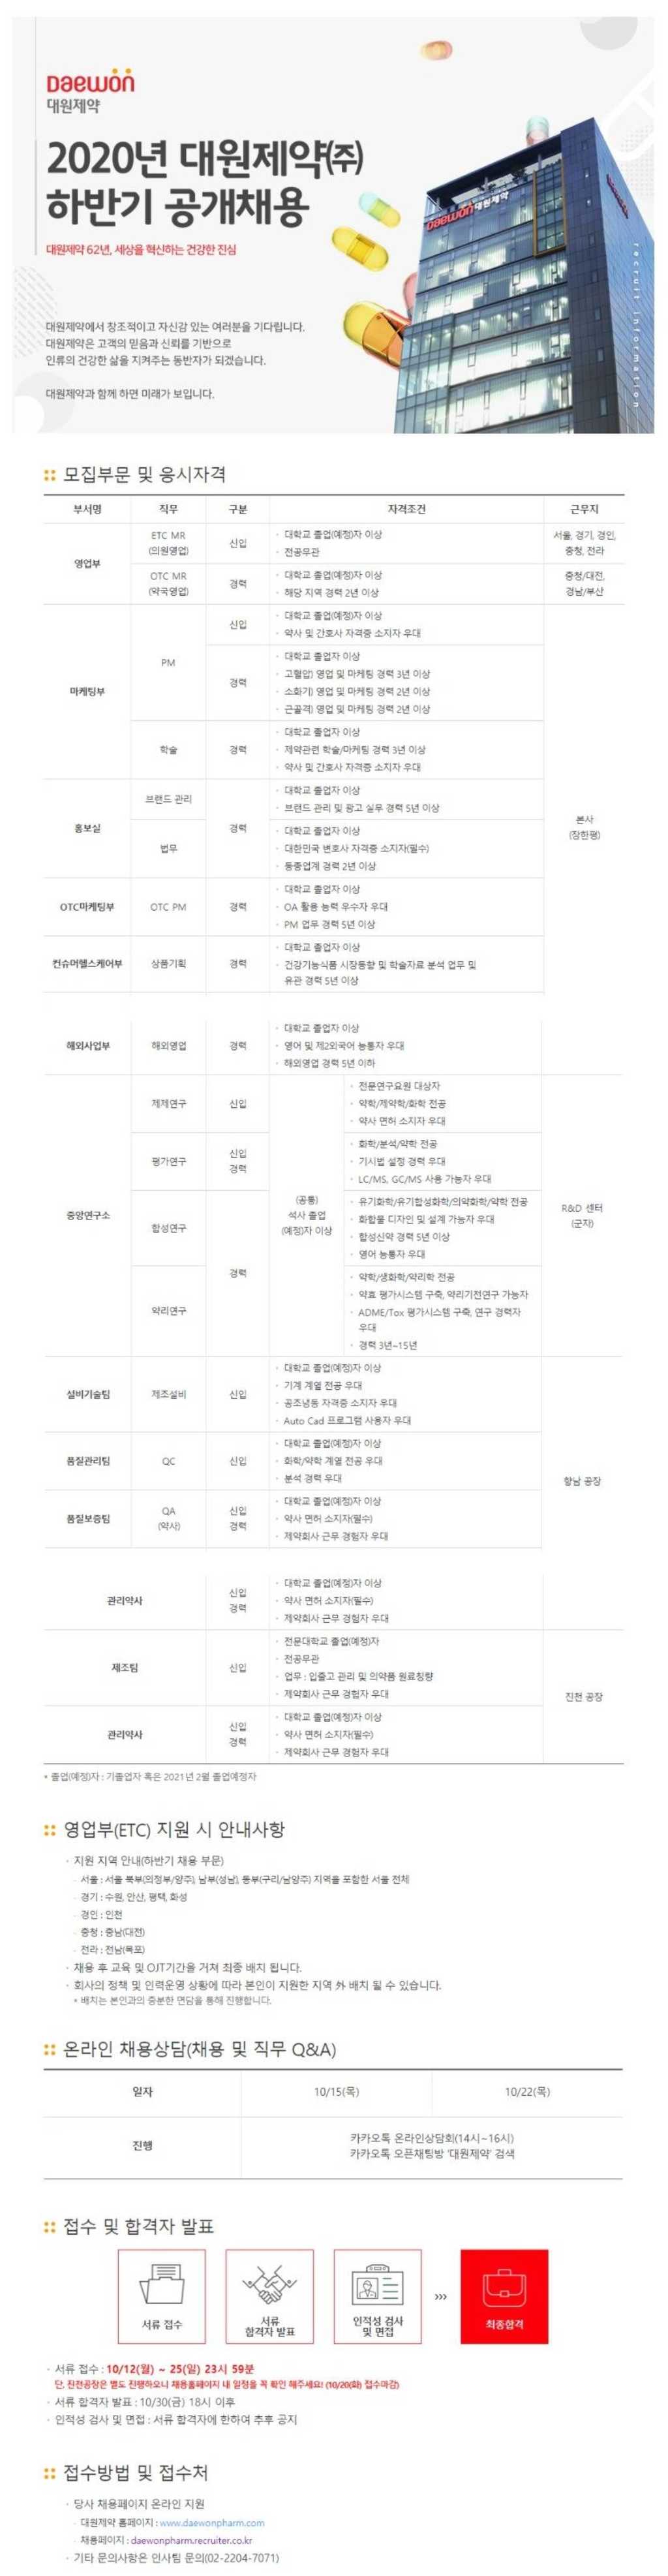 초봉 4,251만원! 하반기 신입/경력직원 공개채용